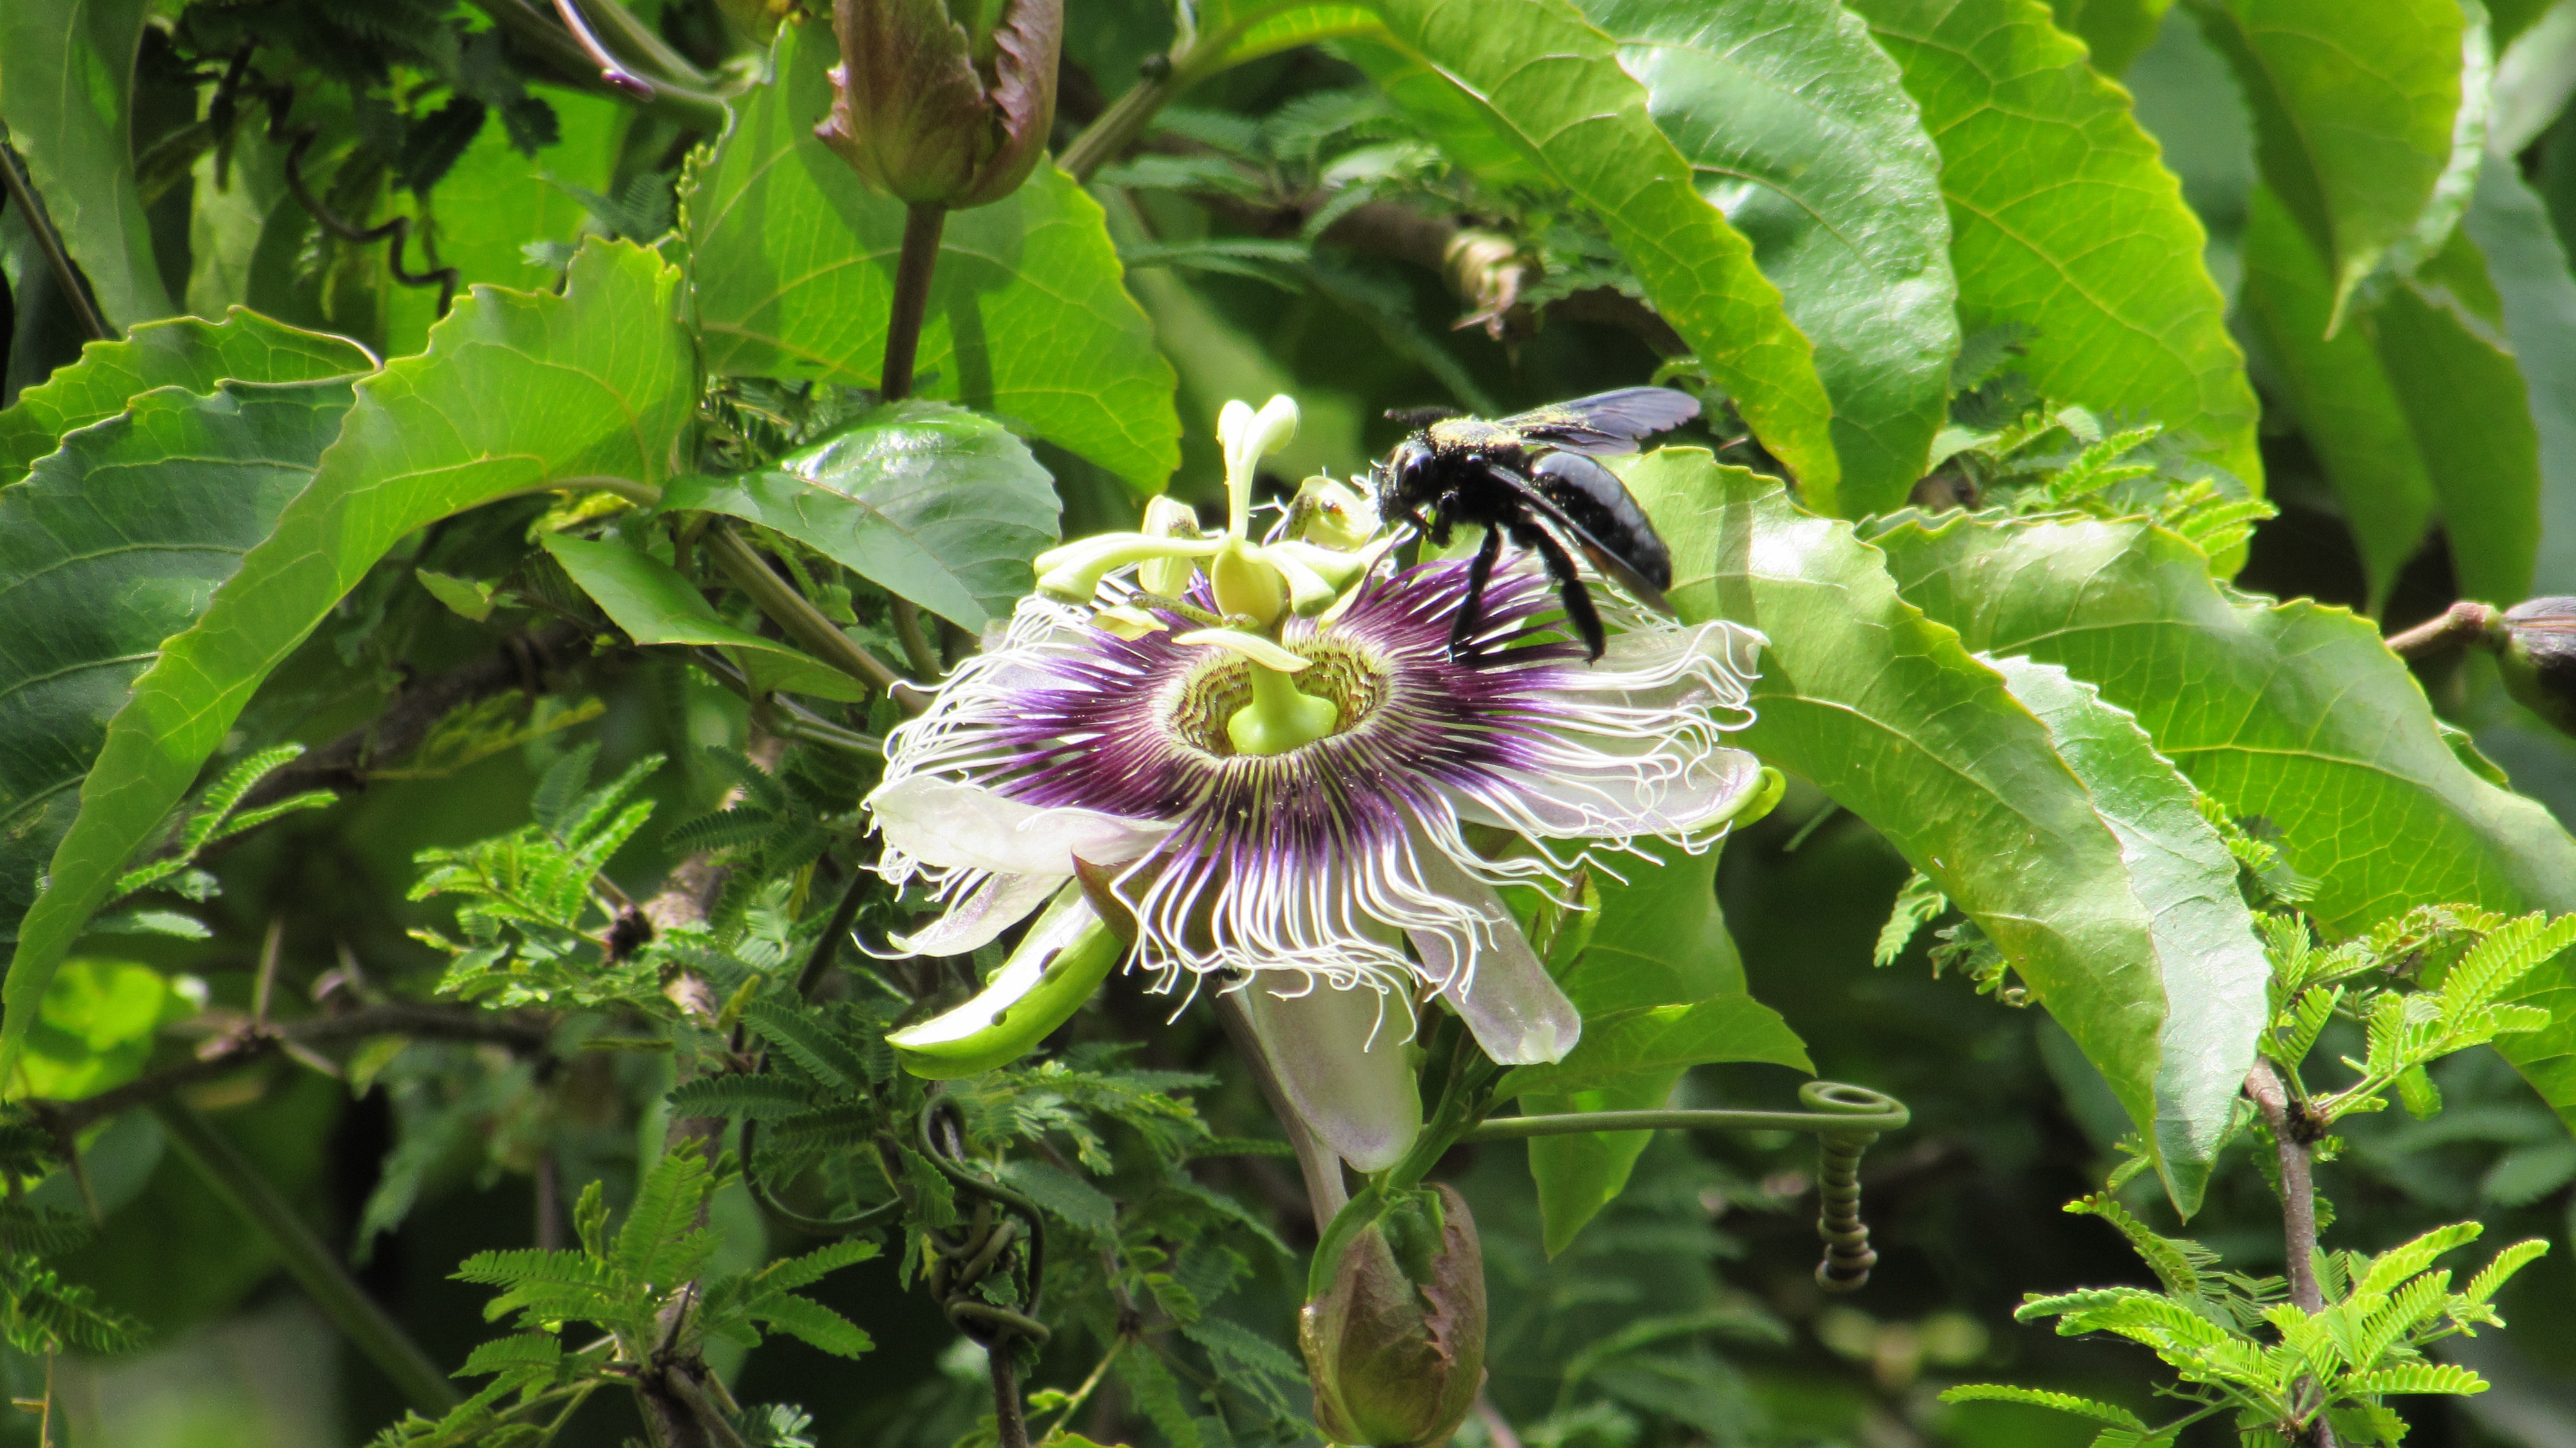 Foto do 1º Concurso de Fotografia- PPGADR - Seu Olhar Sobre o Ambiente. O Flerte. Leticia Bolonha Lucati. Uma abelha mamangava, cor preta e com pólen dourado na superfície está polinizando uma flor de maracujá branca e roxa.